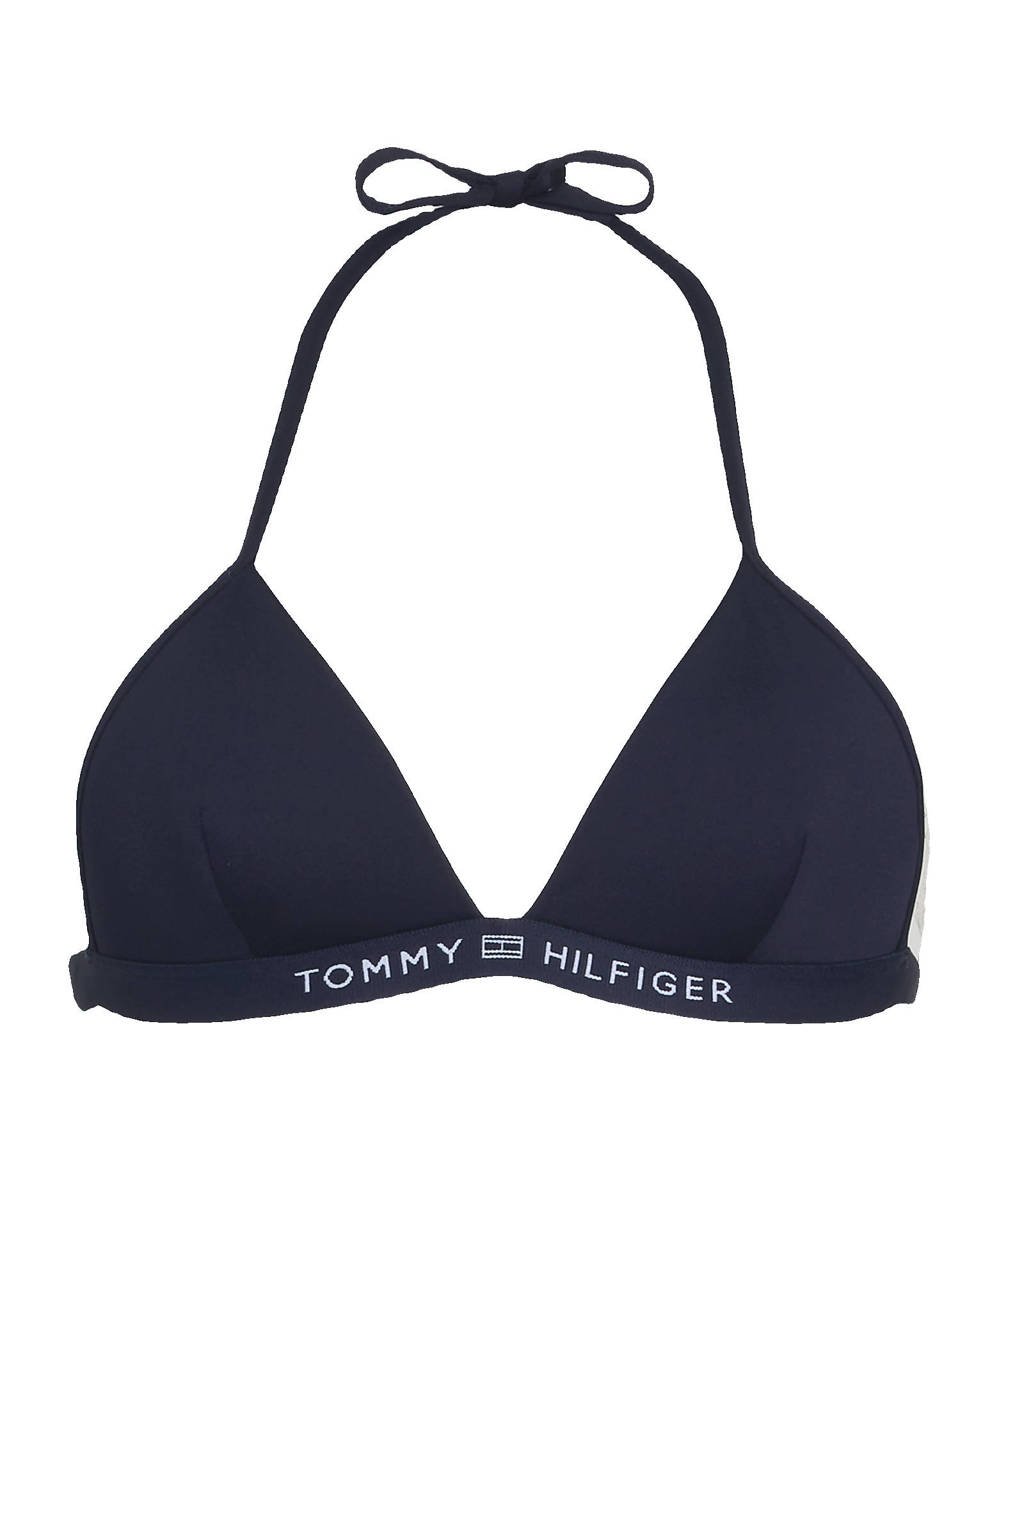 Molester Verzwakken Per ongeluk Tommy Hilfiger voorgevormde triangel bikinitop donkerblauw | wehkamp